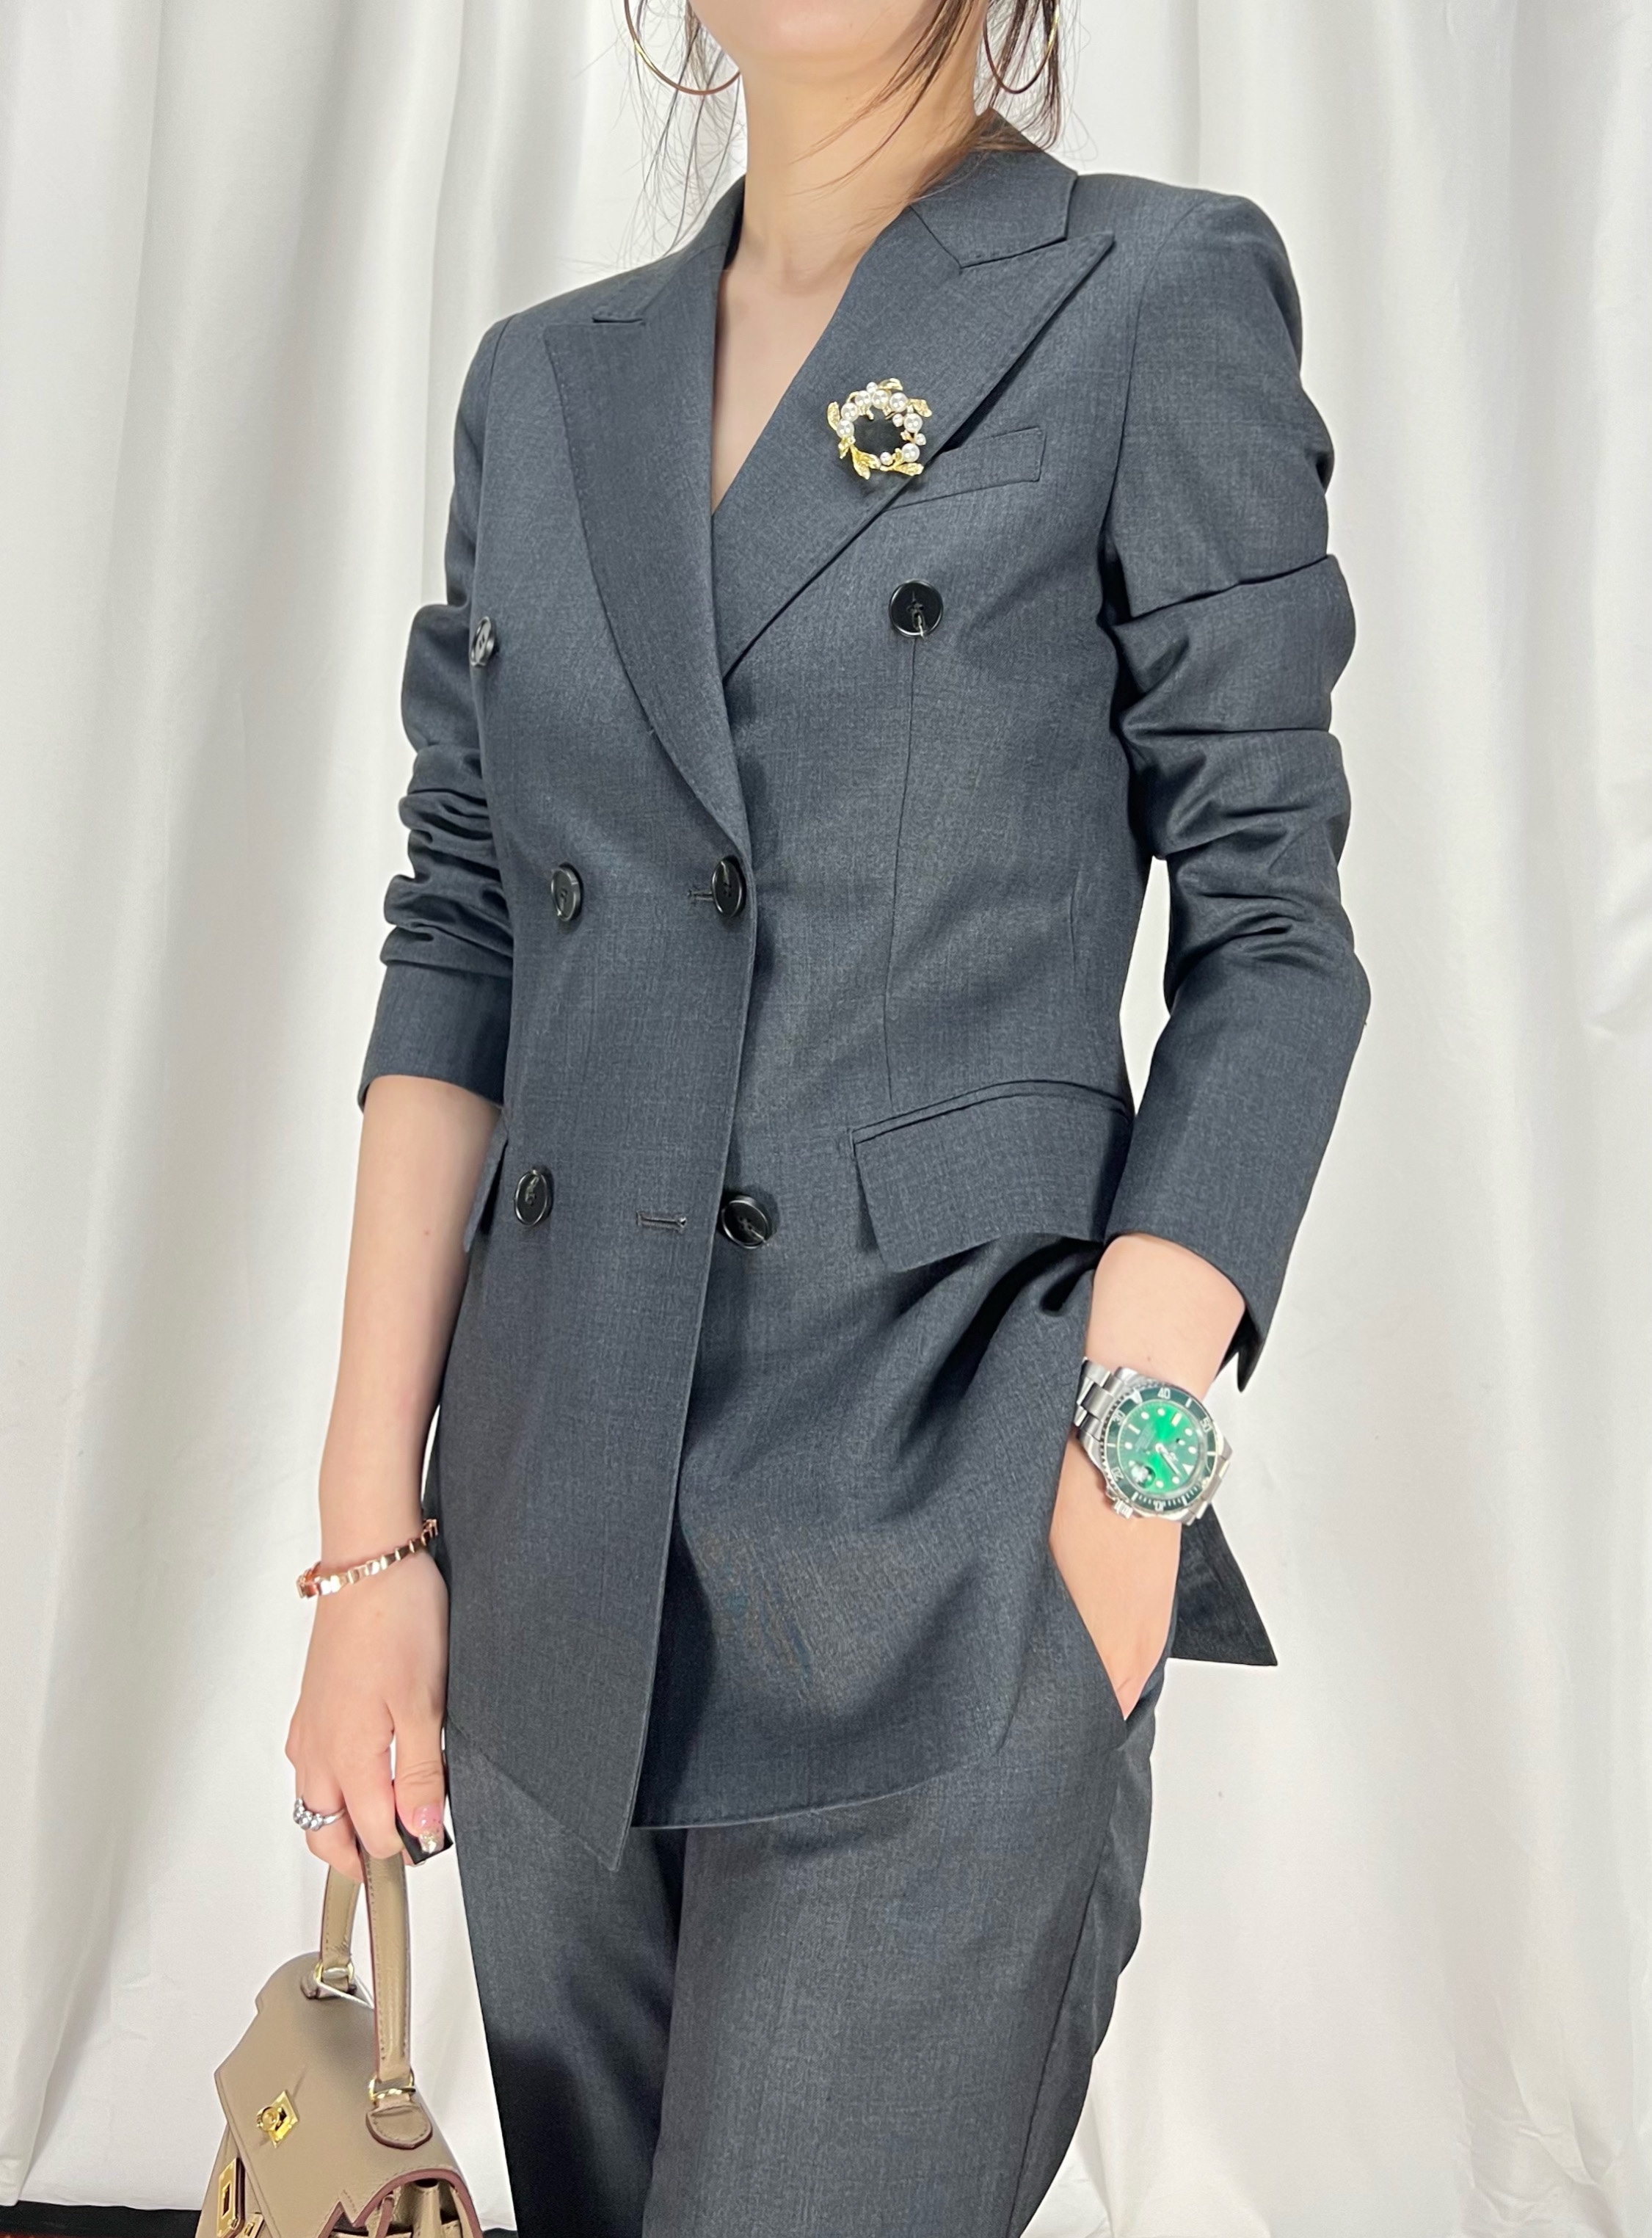 原创设计款 高级灰双排扣双开叉高品质 修身版英伦风女生西装套装